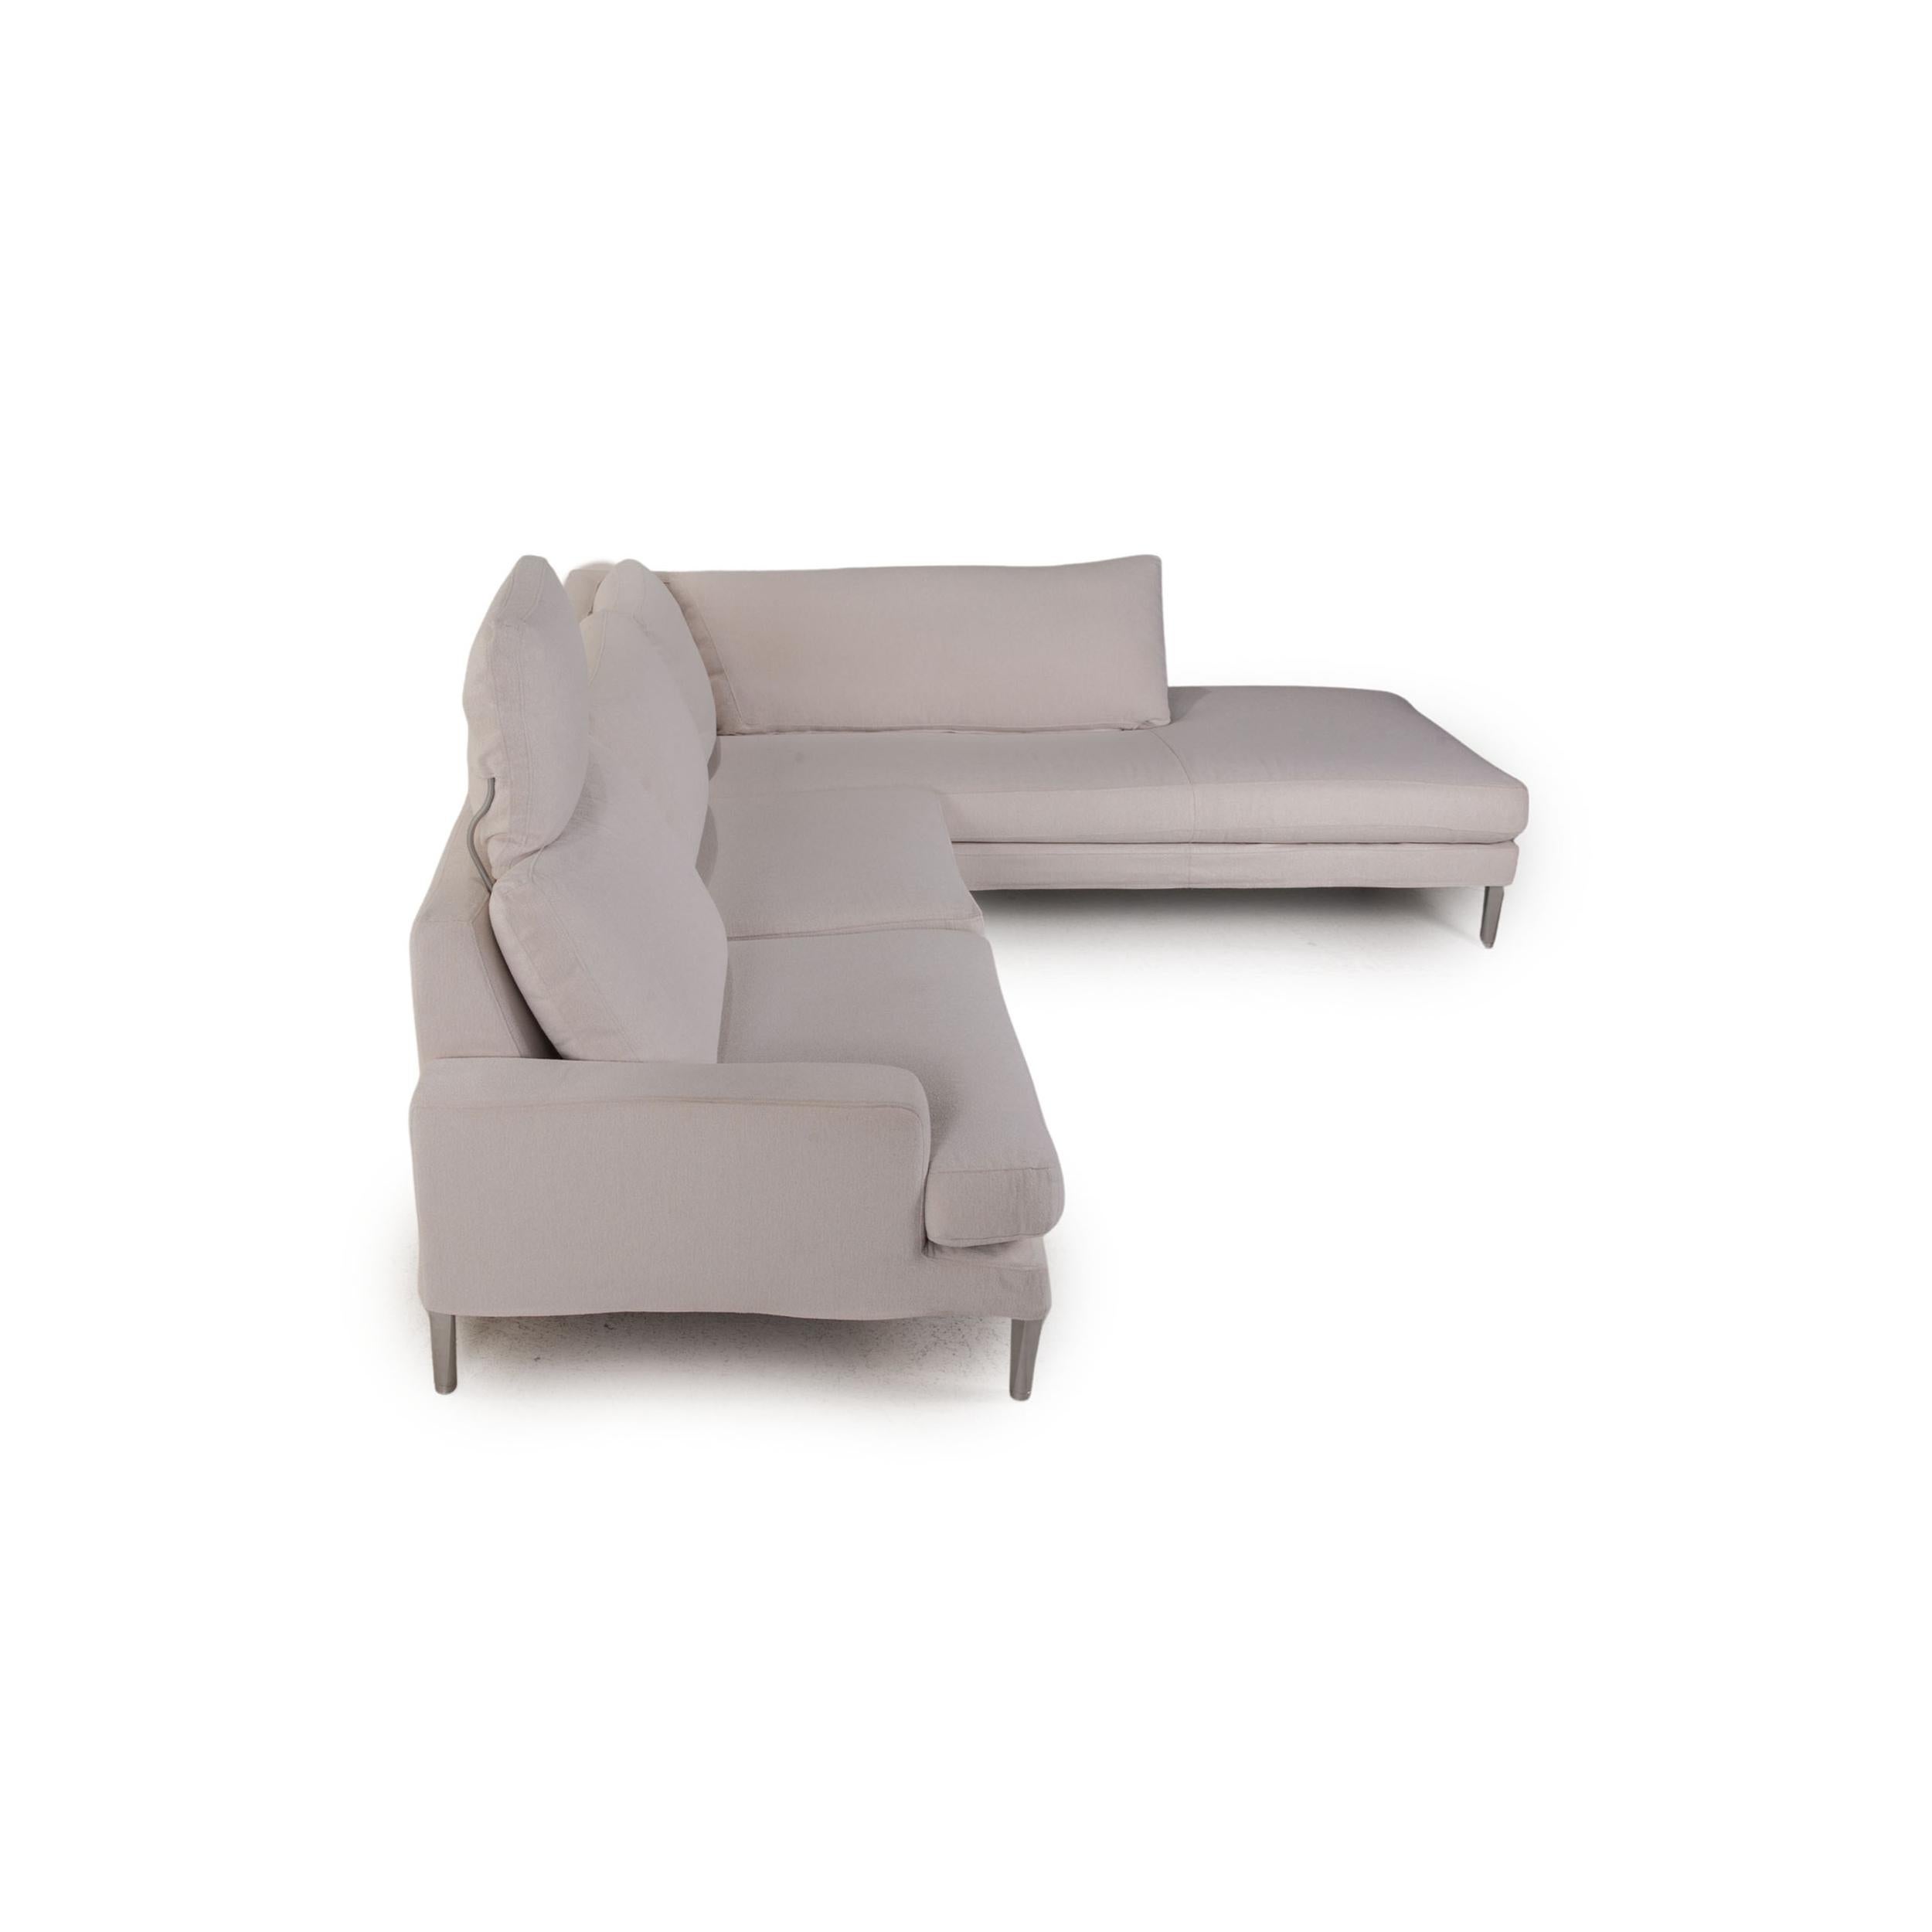 Contemporary FSM Clarus Fabric Sofa Cream Corner Sofa Couch For Sale